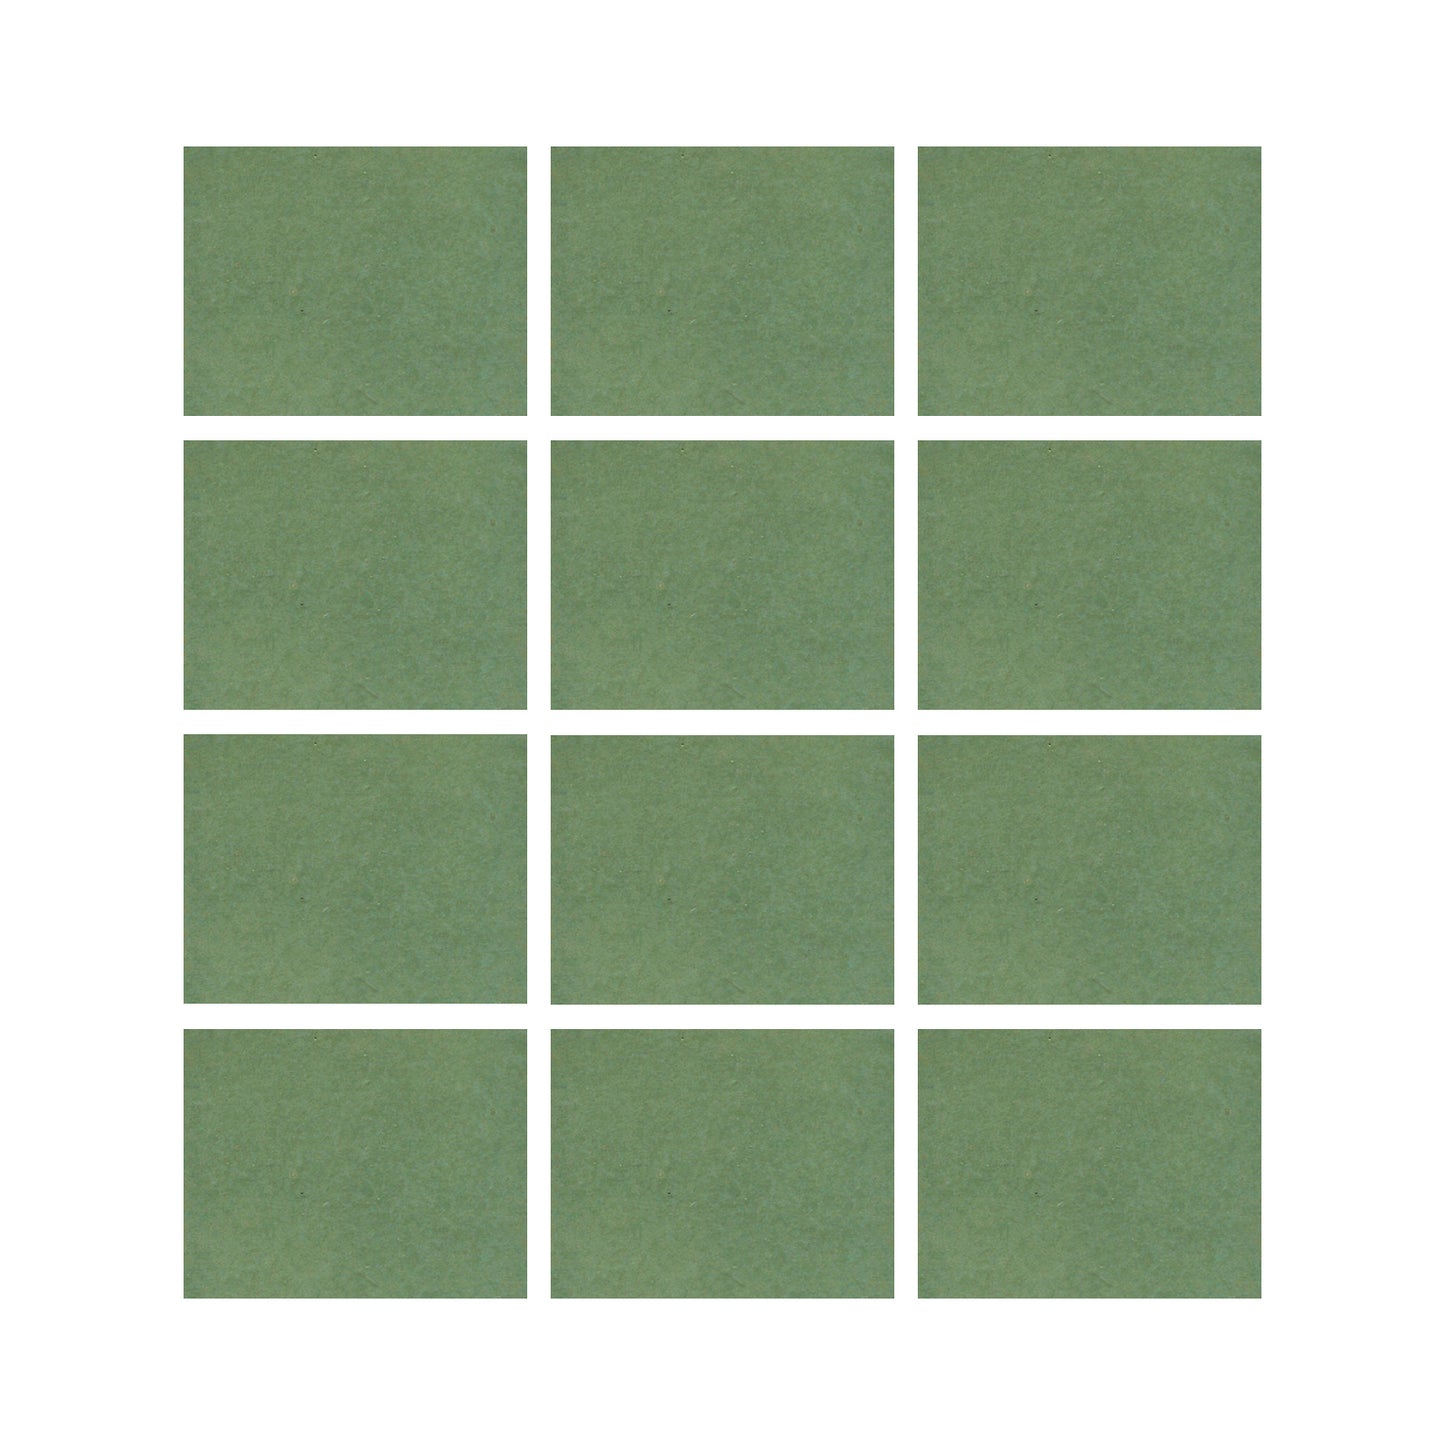 Wasabi green 2x3 field tile